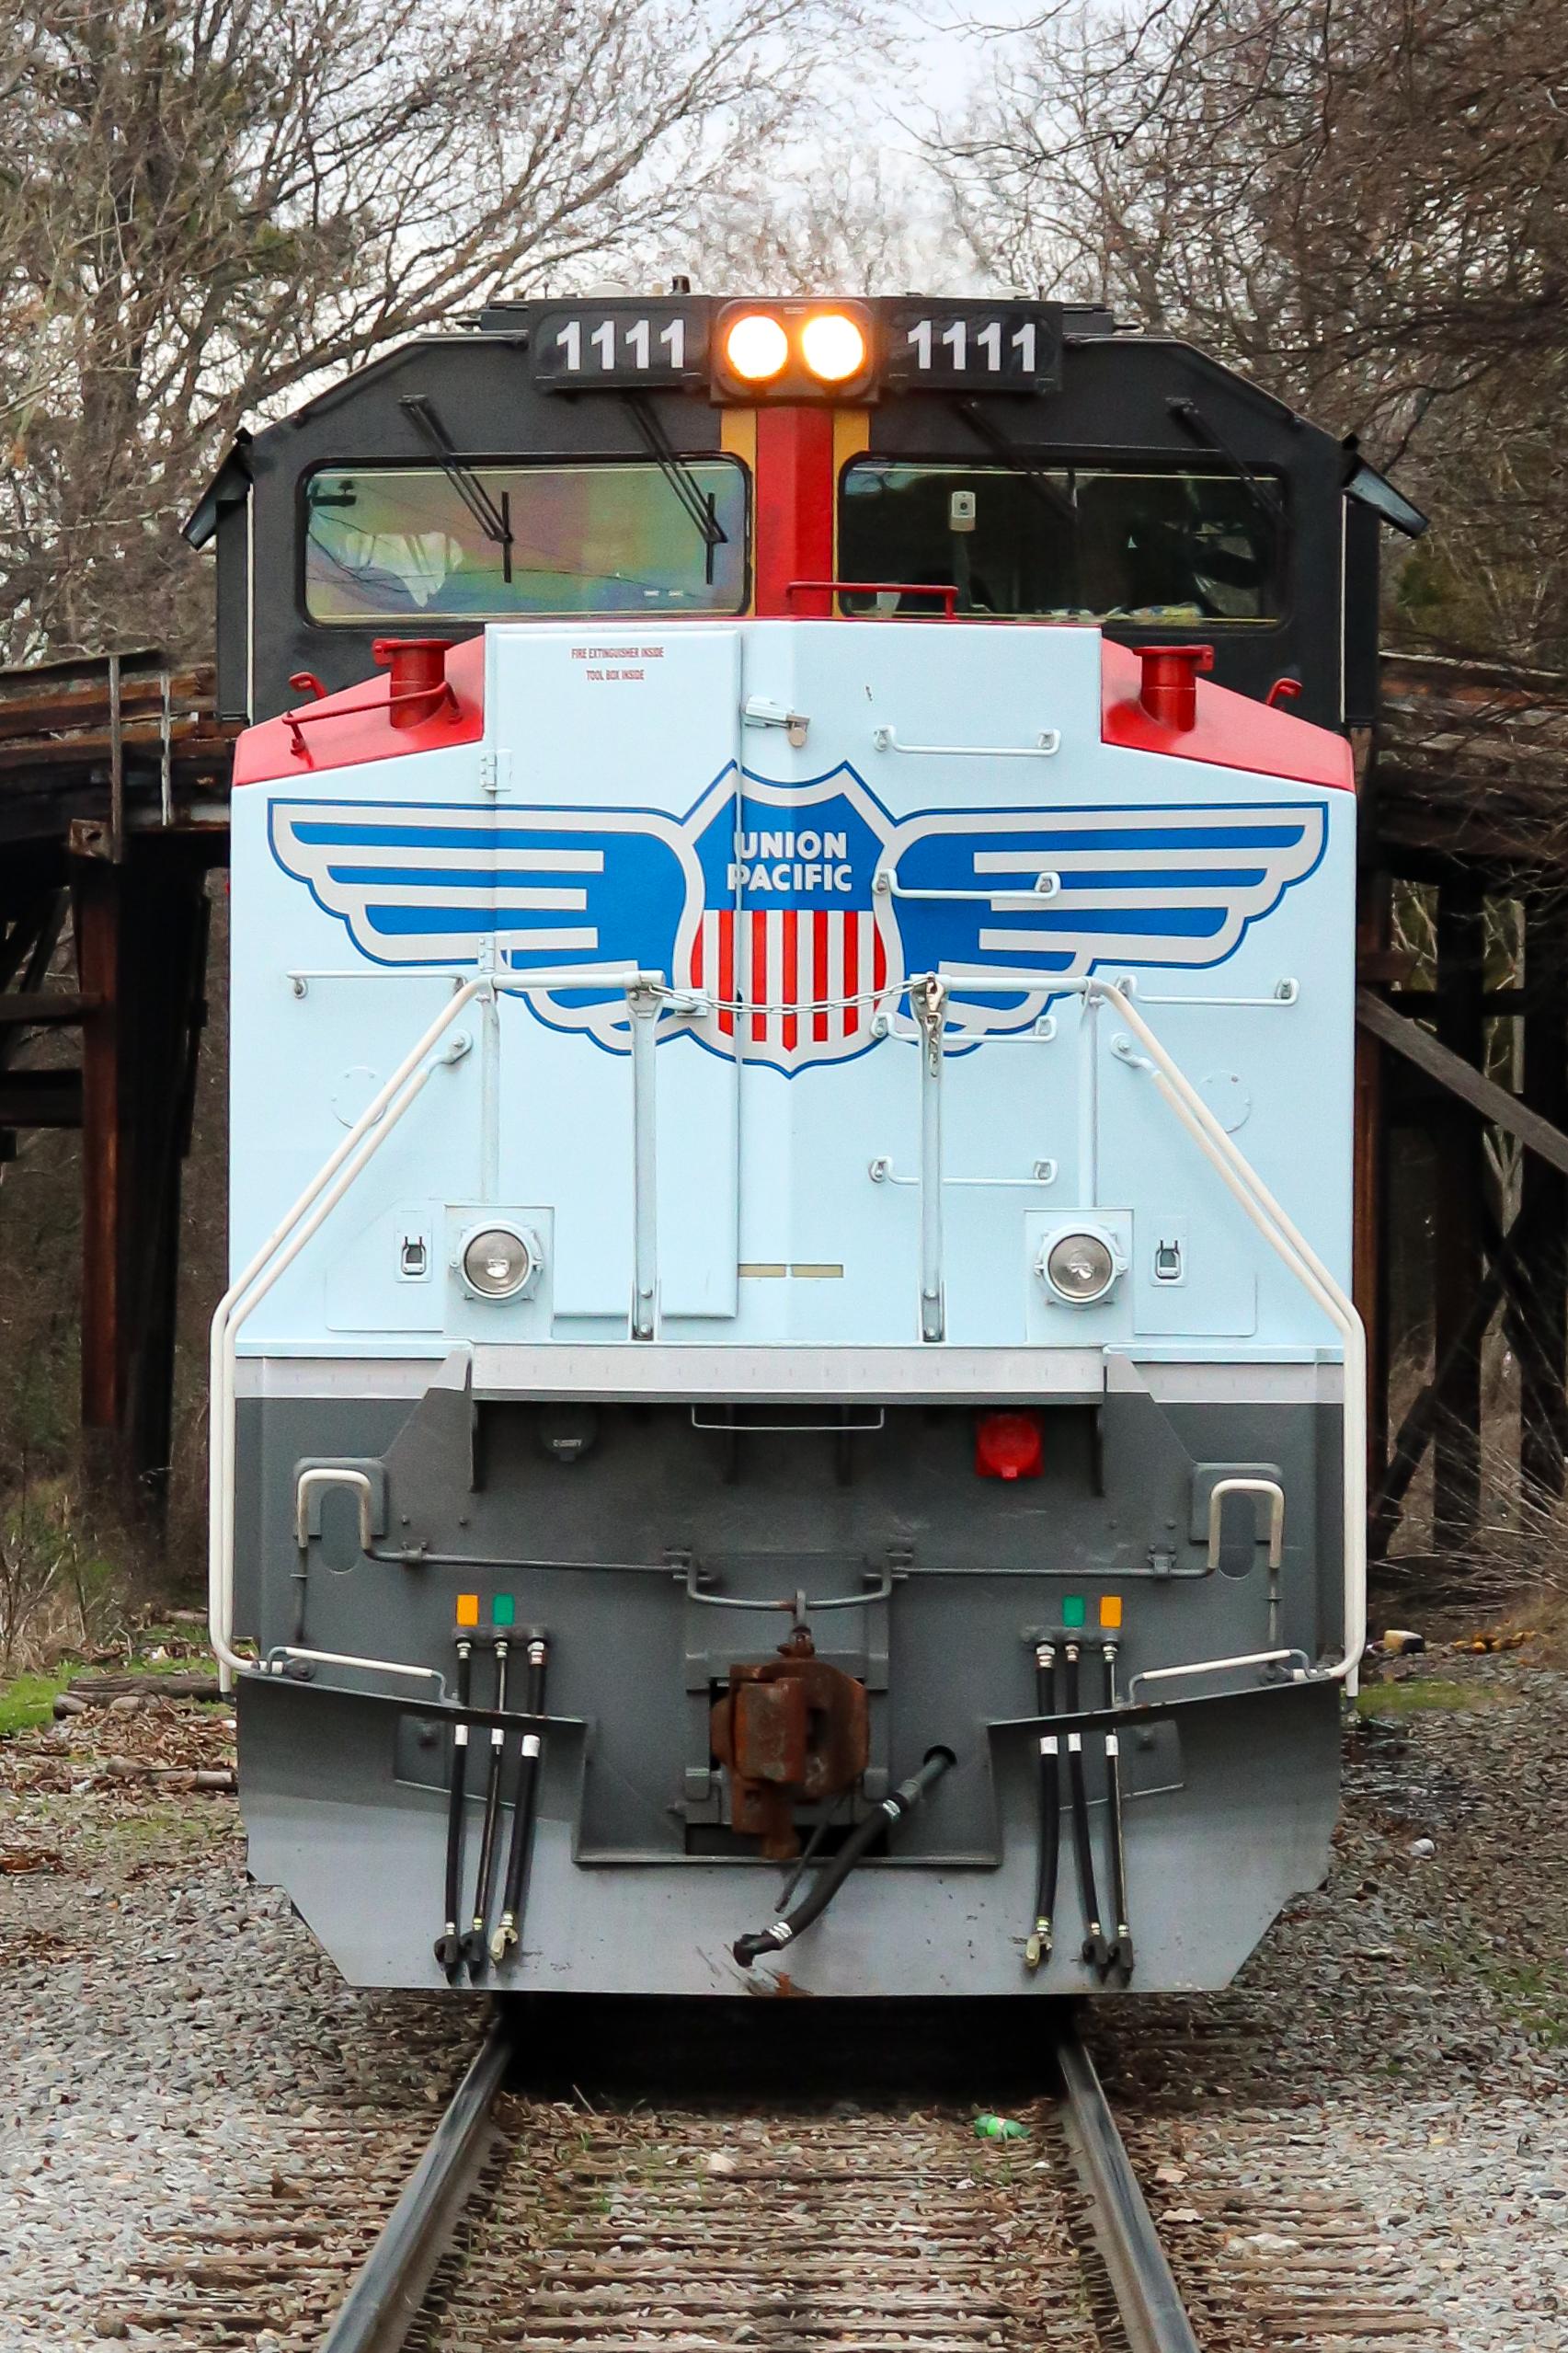 考证员工骄傲美国联合太平洋铁路sd70ace1111号内燃机车